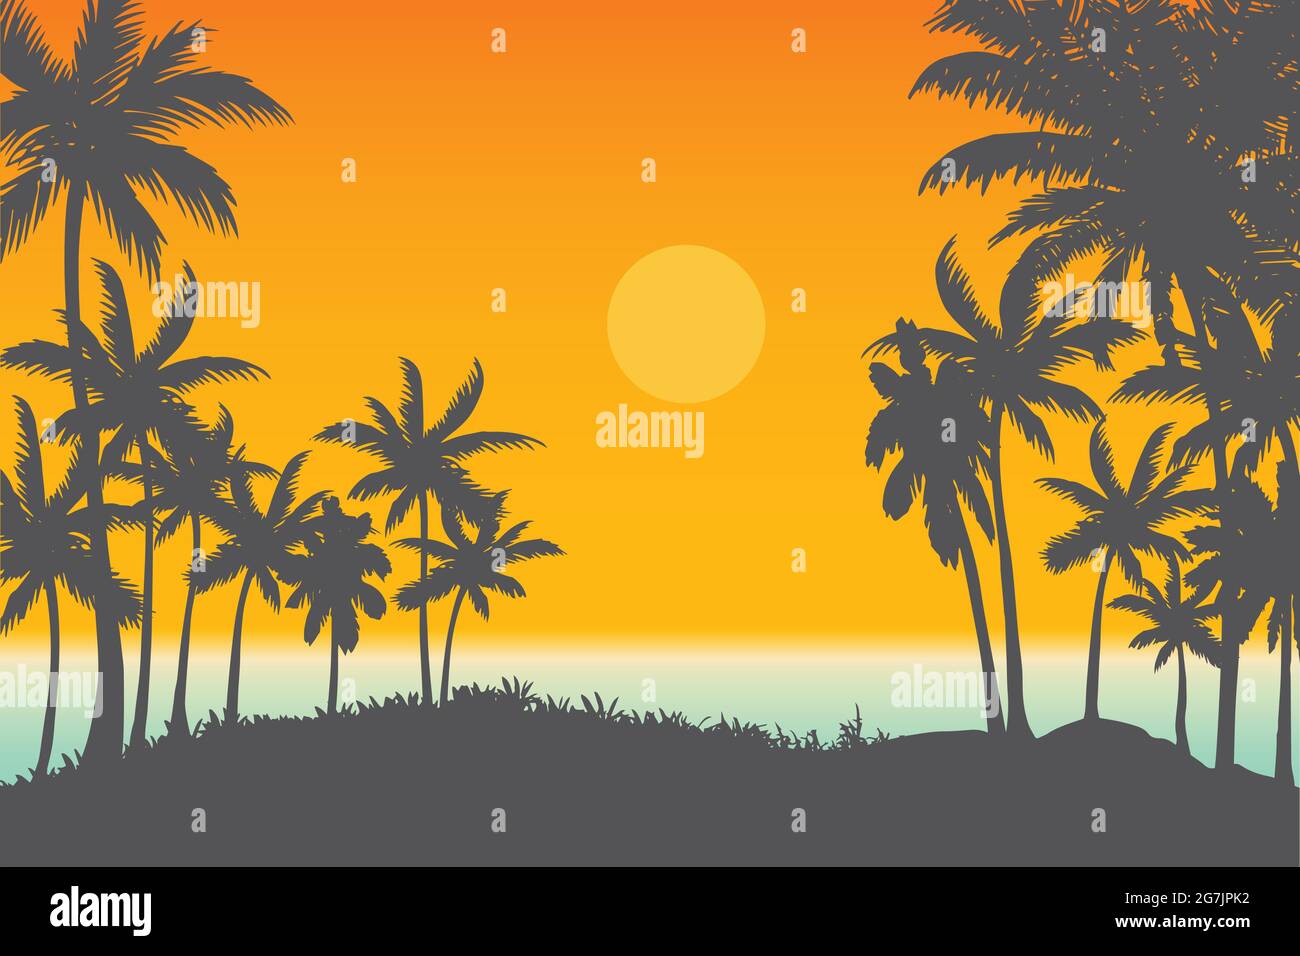 Tropischer Strand natürliche Landschaft Vektor, Meer und Palmen Sonnenuntergang Hintergrund Stock Vektor